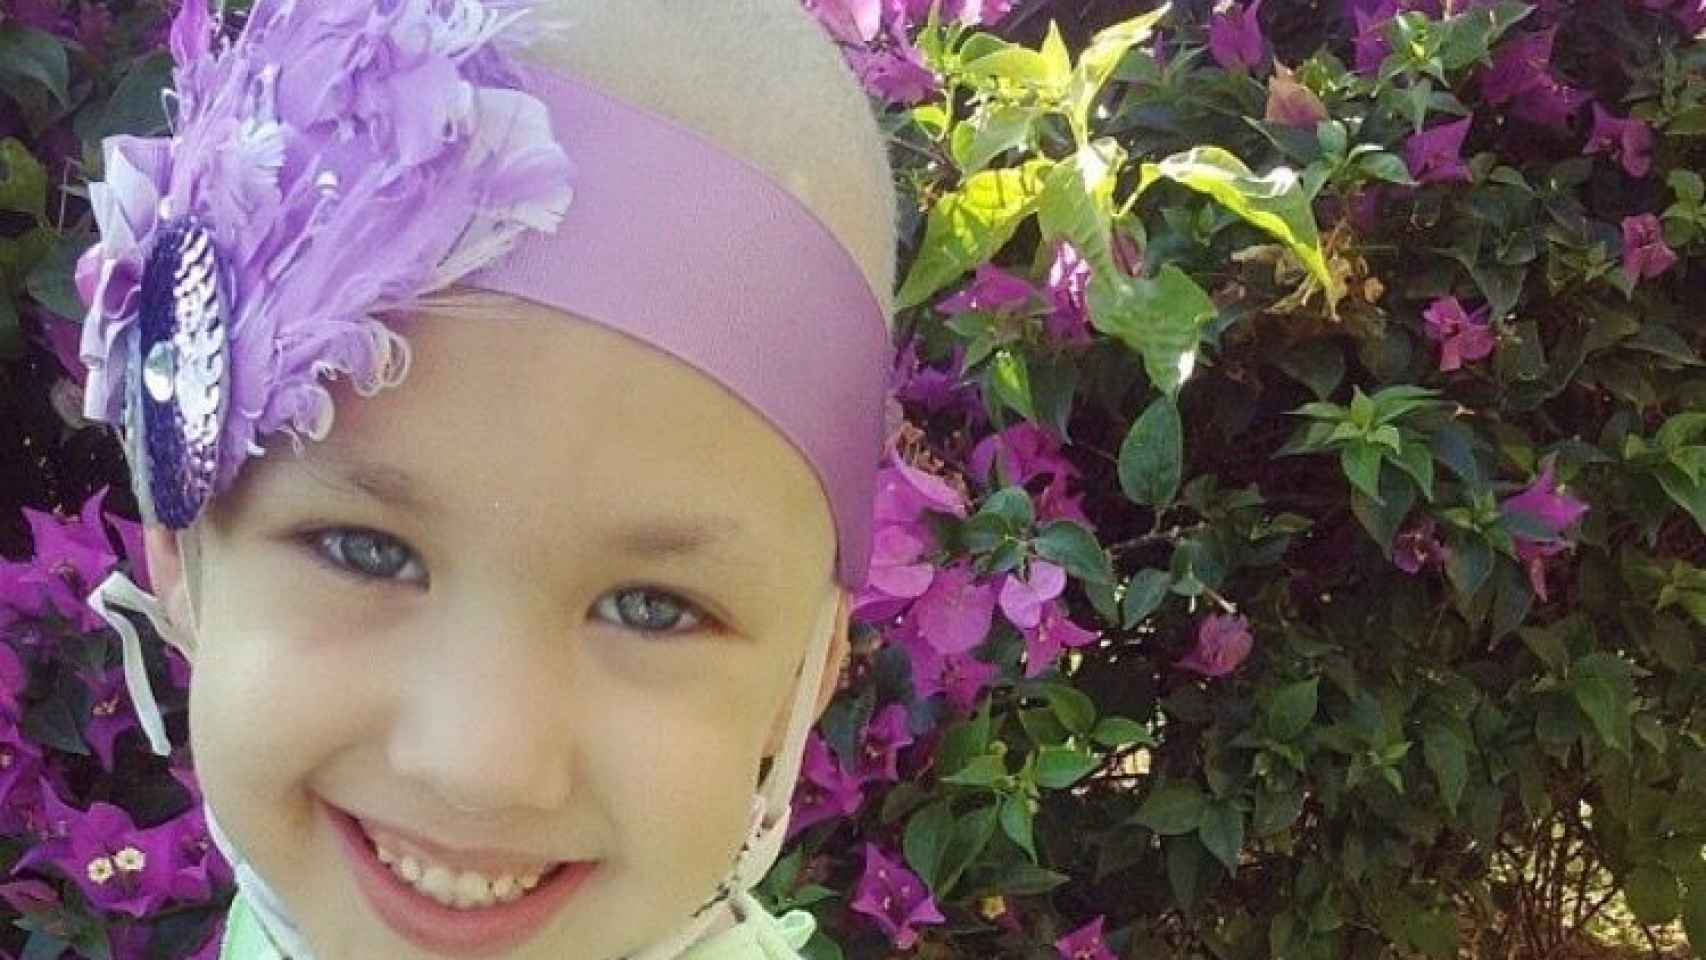 Gaby, la niña de ocho años que lucha contra el cáncer